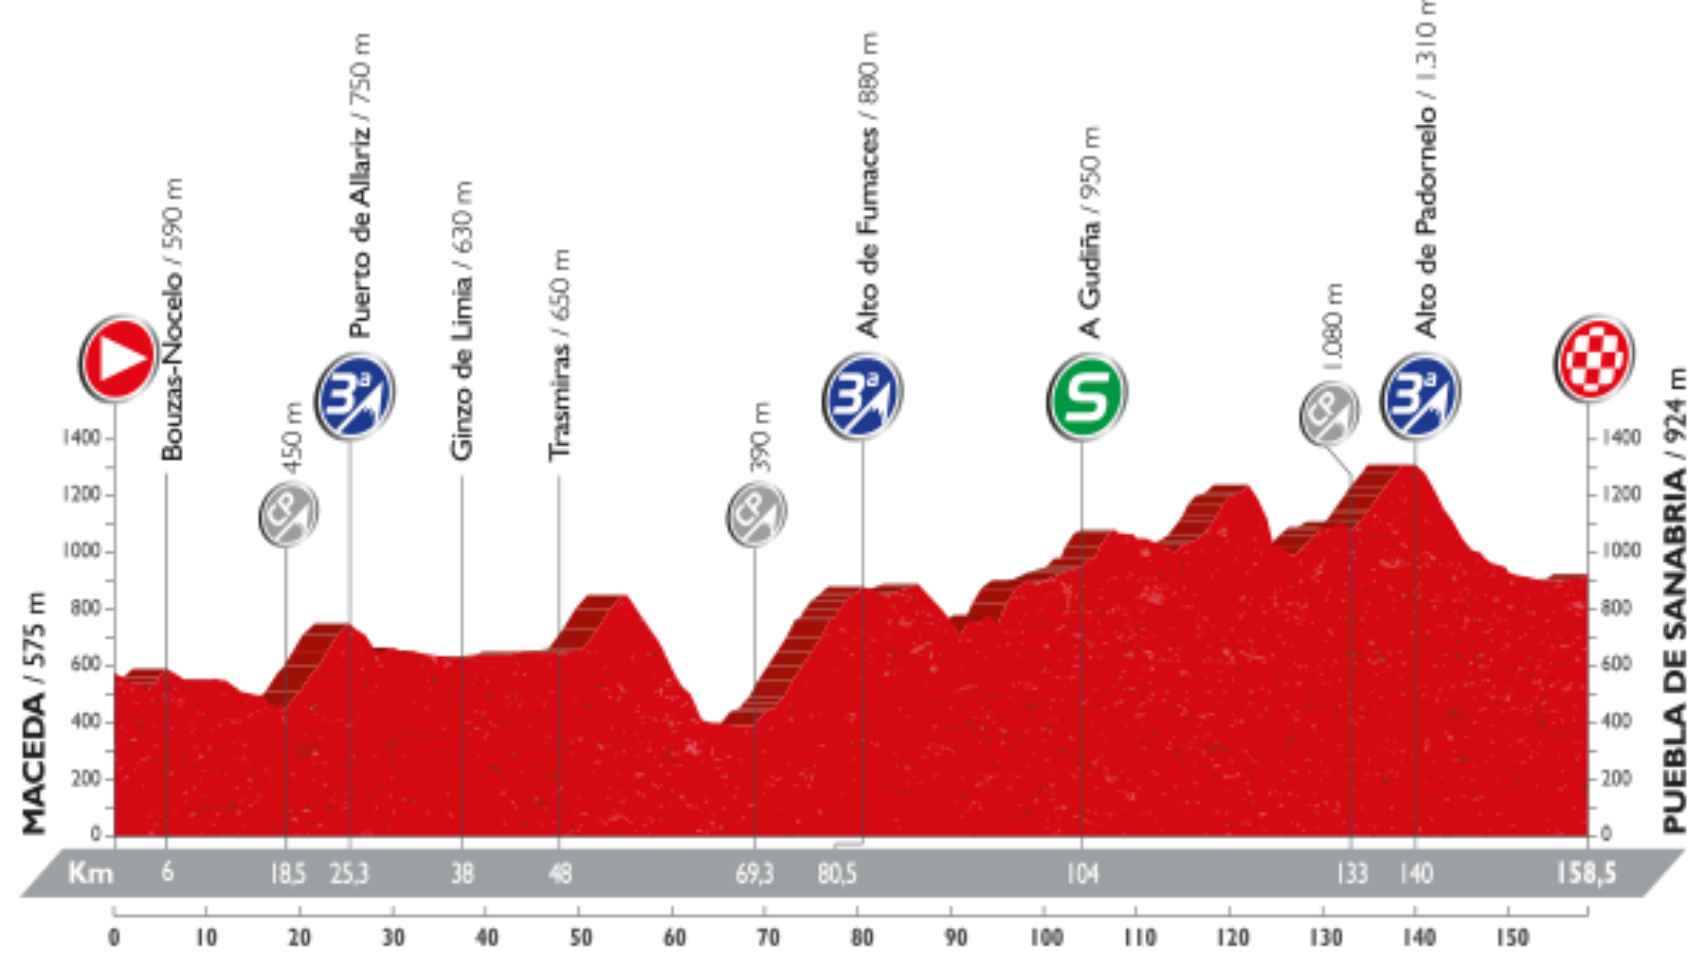 Perfil de la séptima etapa de La Vuelta.